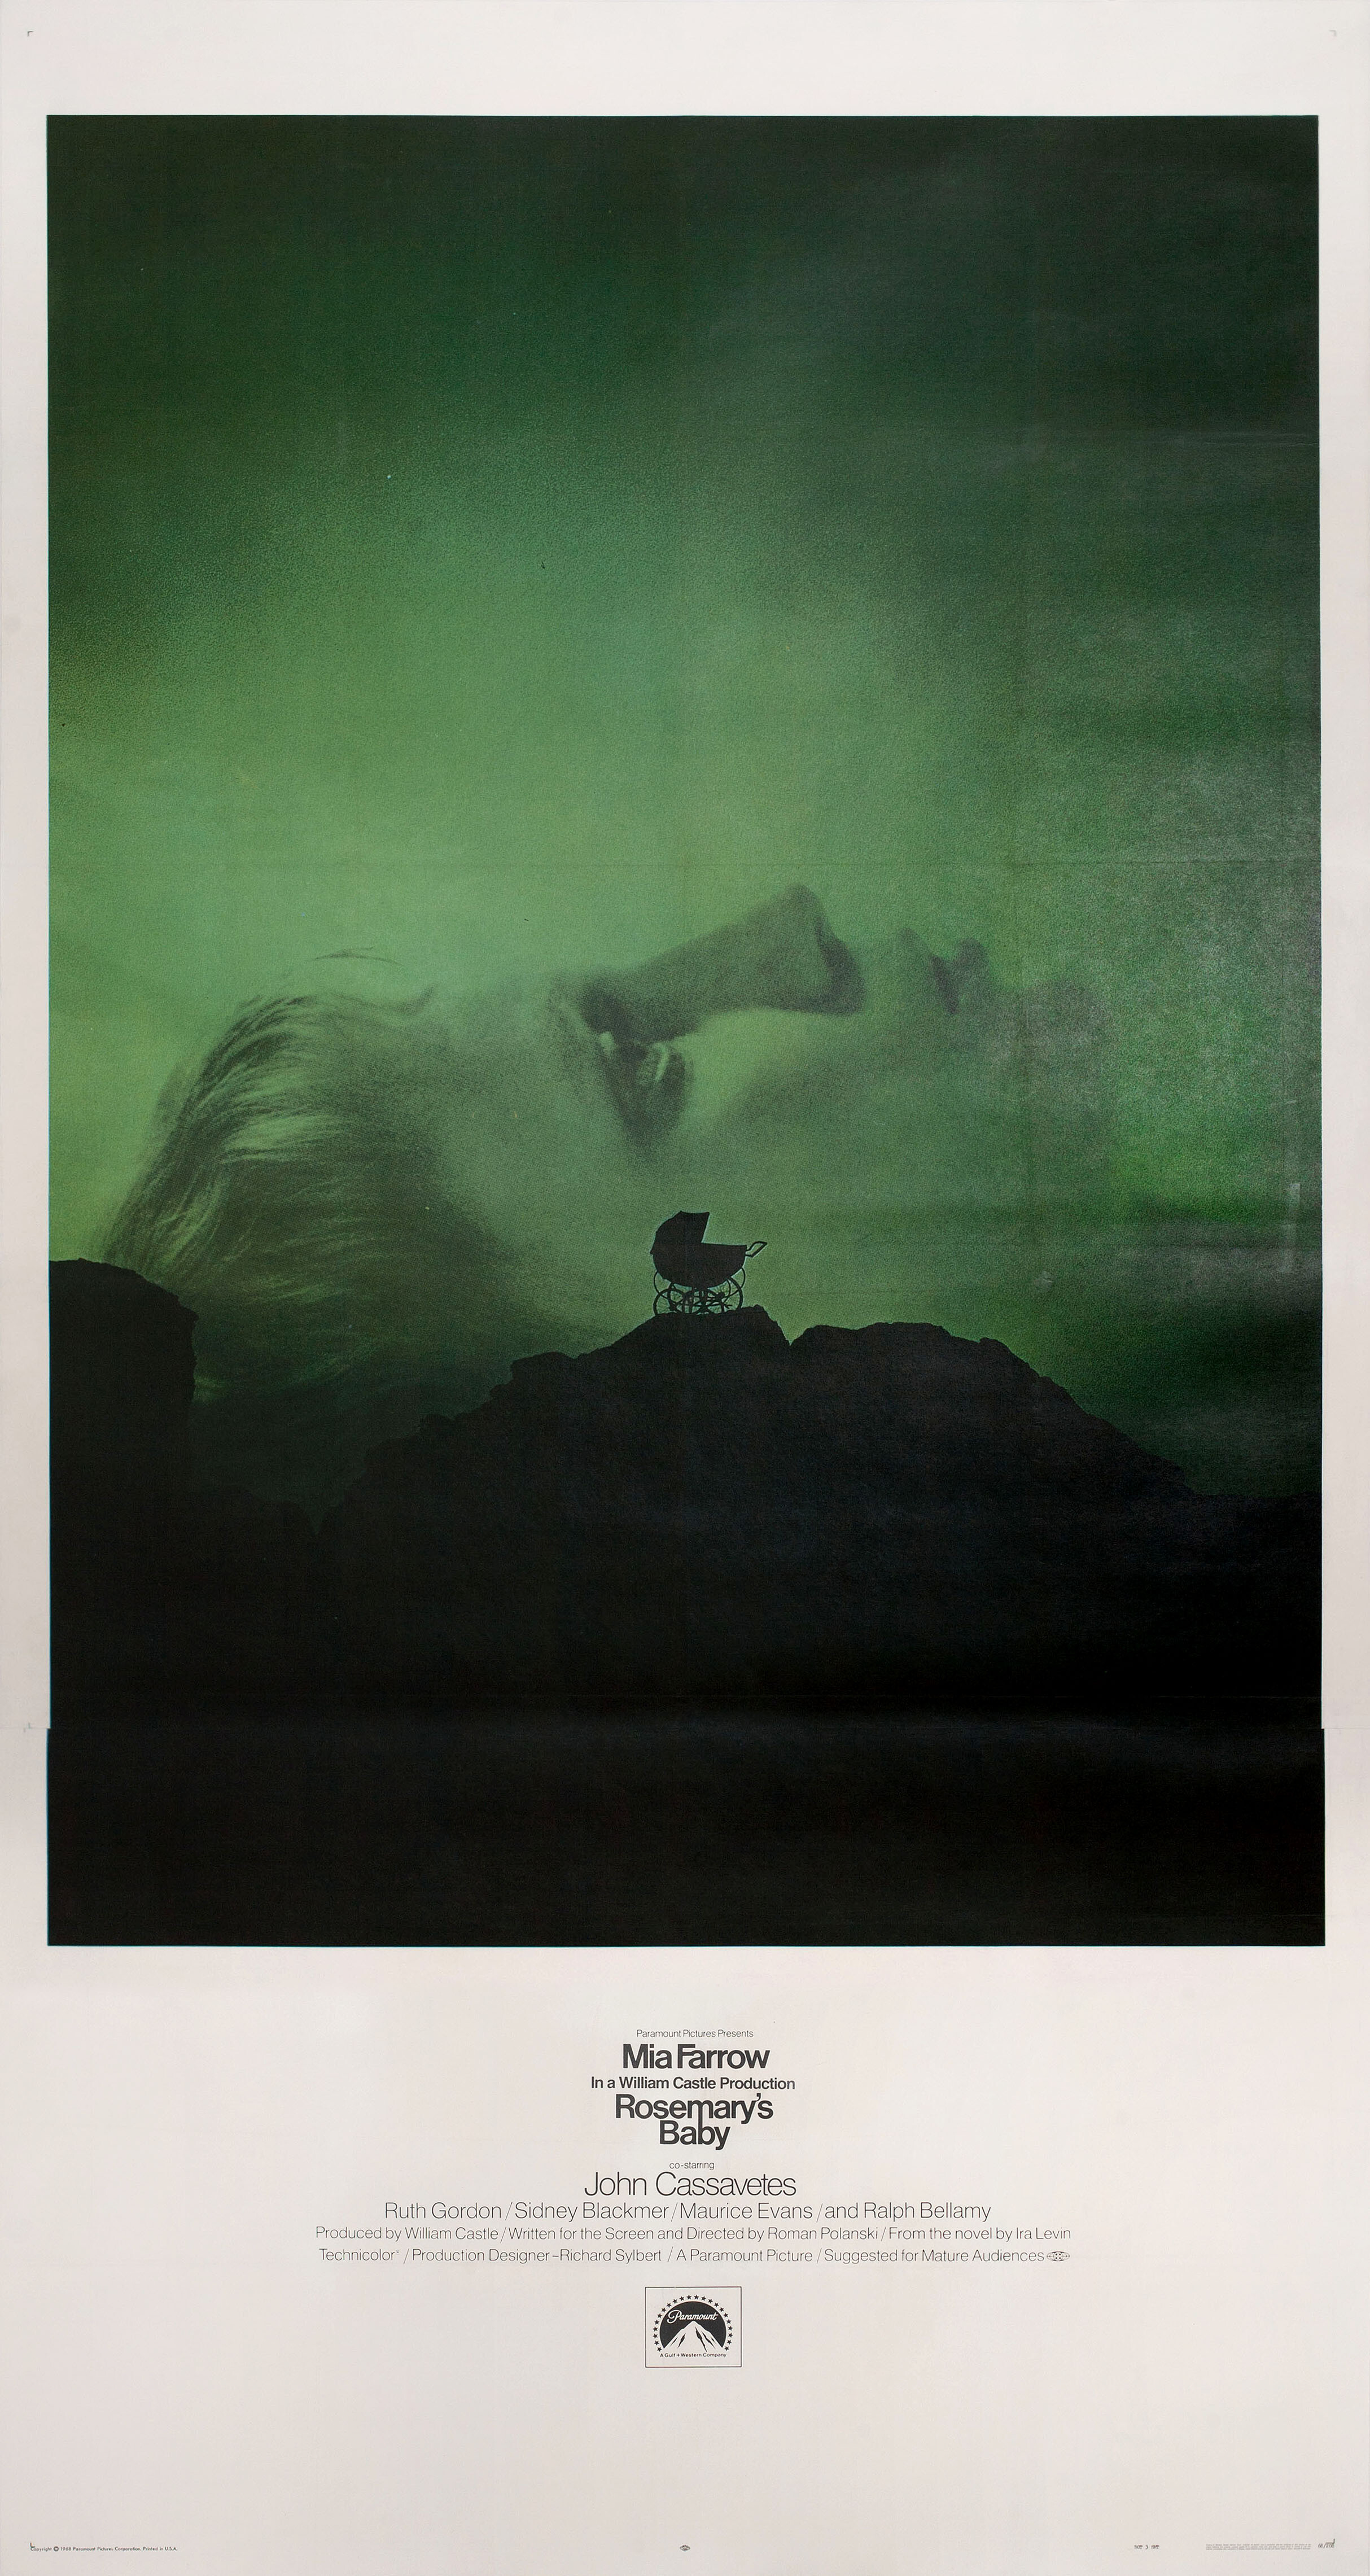 Ребенок Розмари (Rosemarys Baby, 1968), режиссёр Роман Полански, американский постер к фильму, автор Стив Франкфурт, Филип Гипс (ужасы, 1968 год)